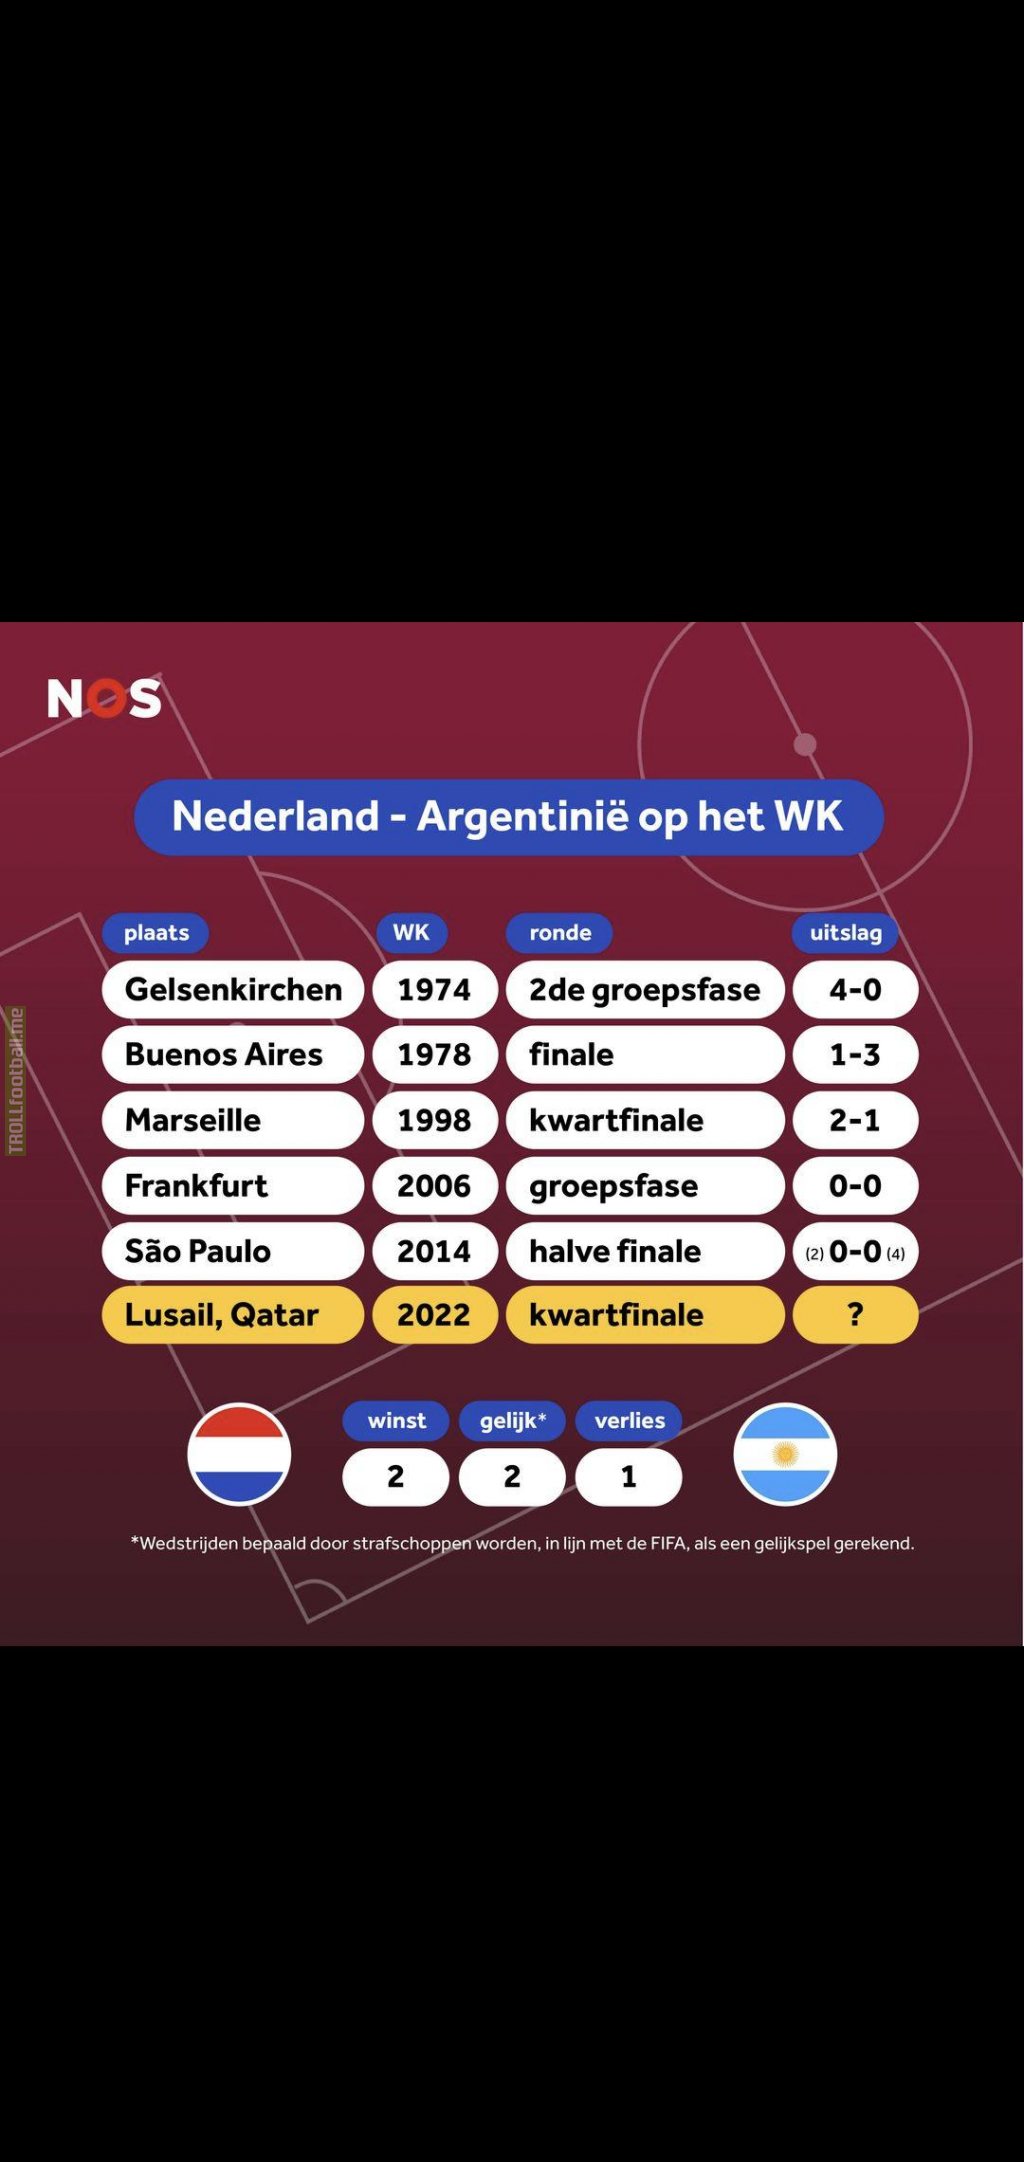 NL - ARG A world cup classic